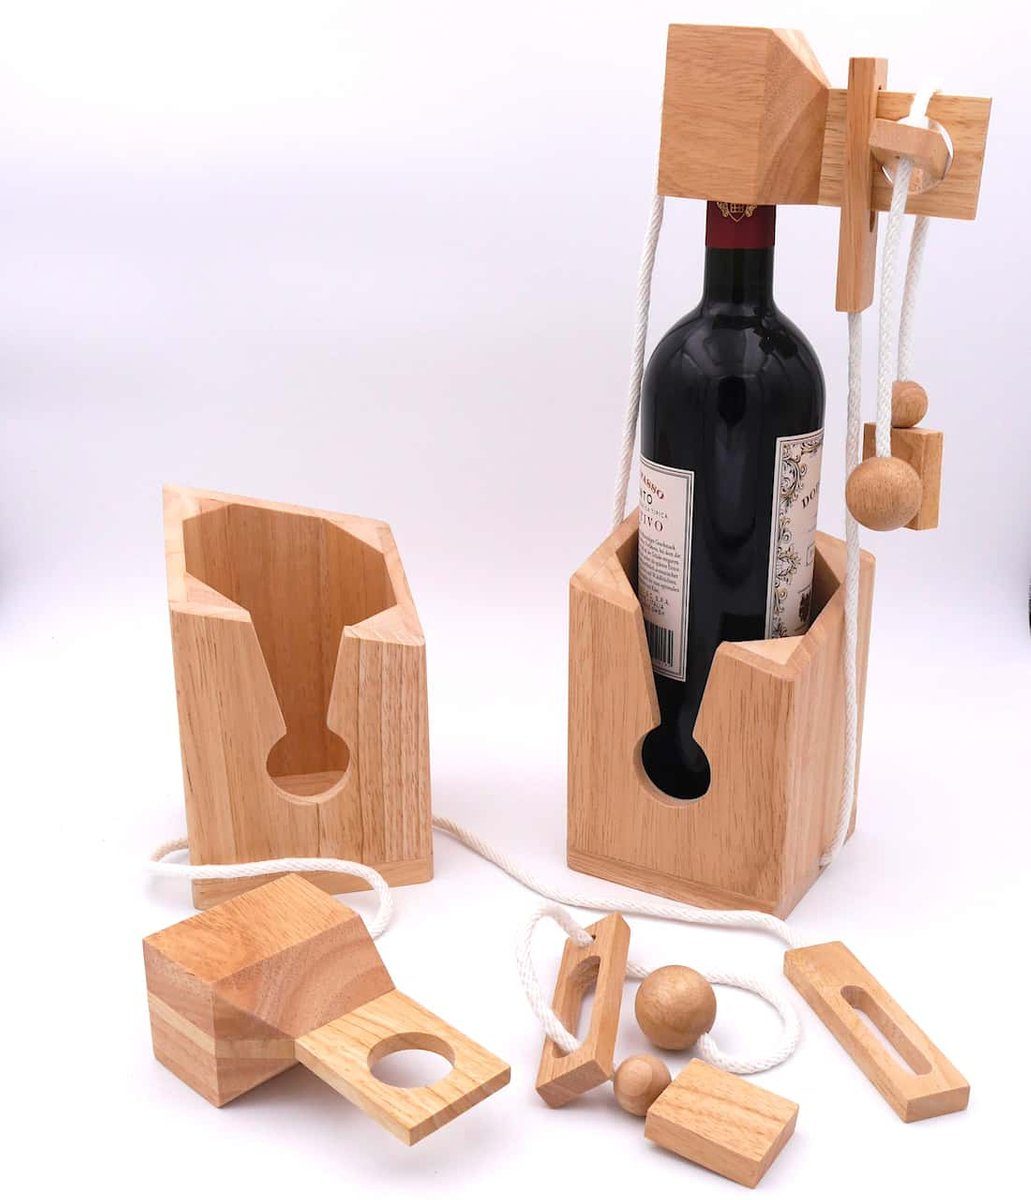 ROMBOL Denkspiele Spiel, Geschenkverpackung Flaschentresor – Edles Denkspiel aus Holz für große Flaschen, wiederverwendbar helles Holz, weißes Band